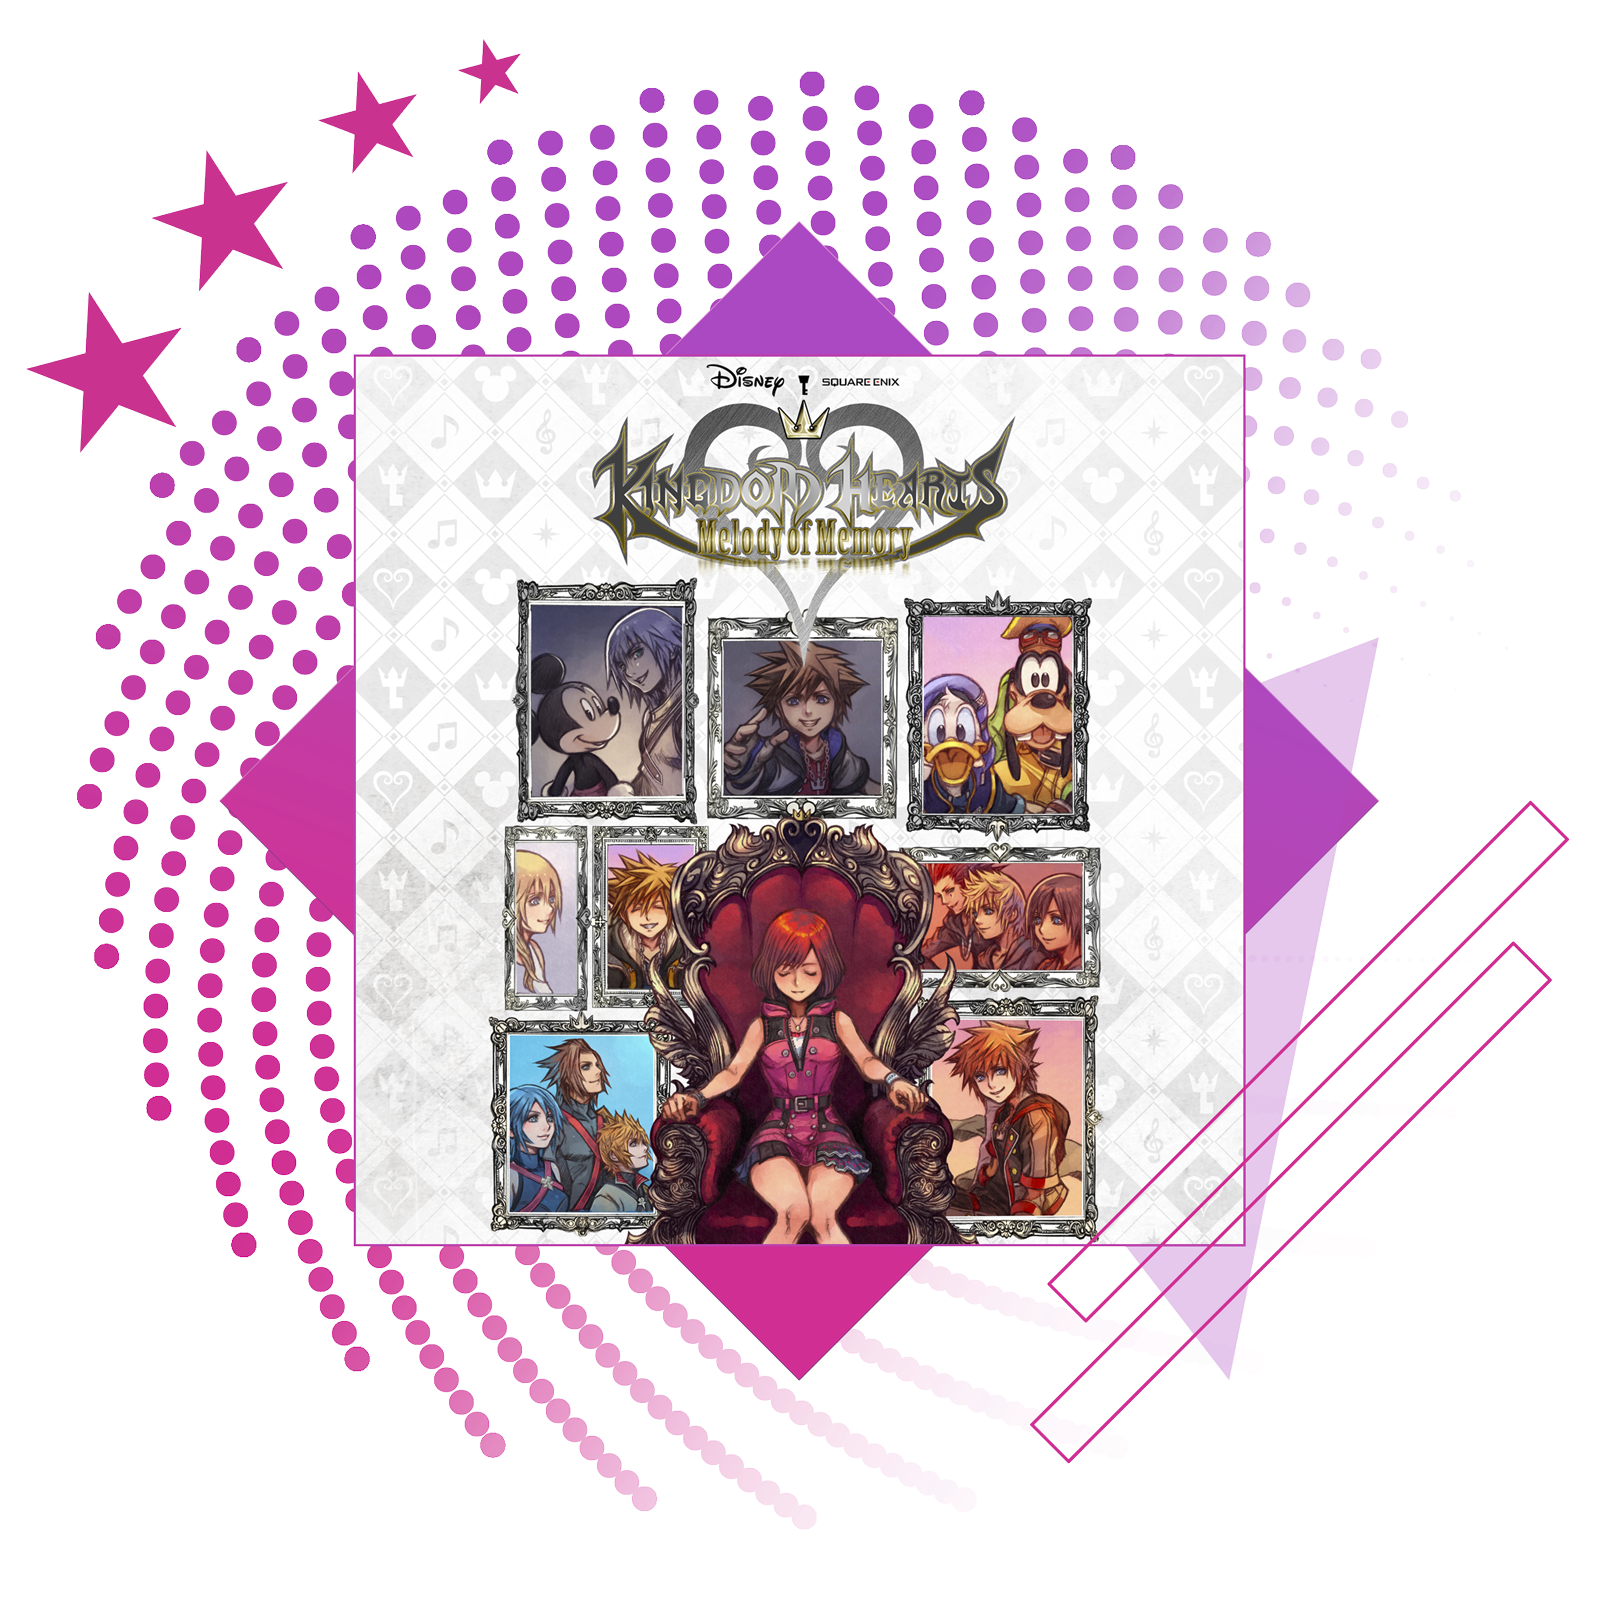 Лучшие ритмичные игры – изображение с обложкой Kingdom Hearts: Melody of Memory.